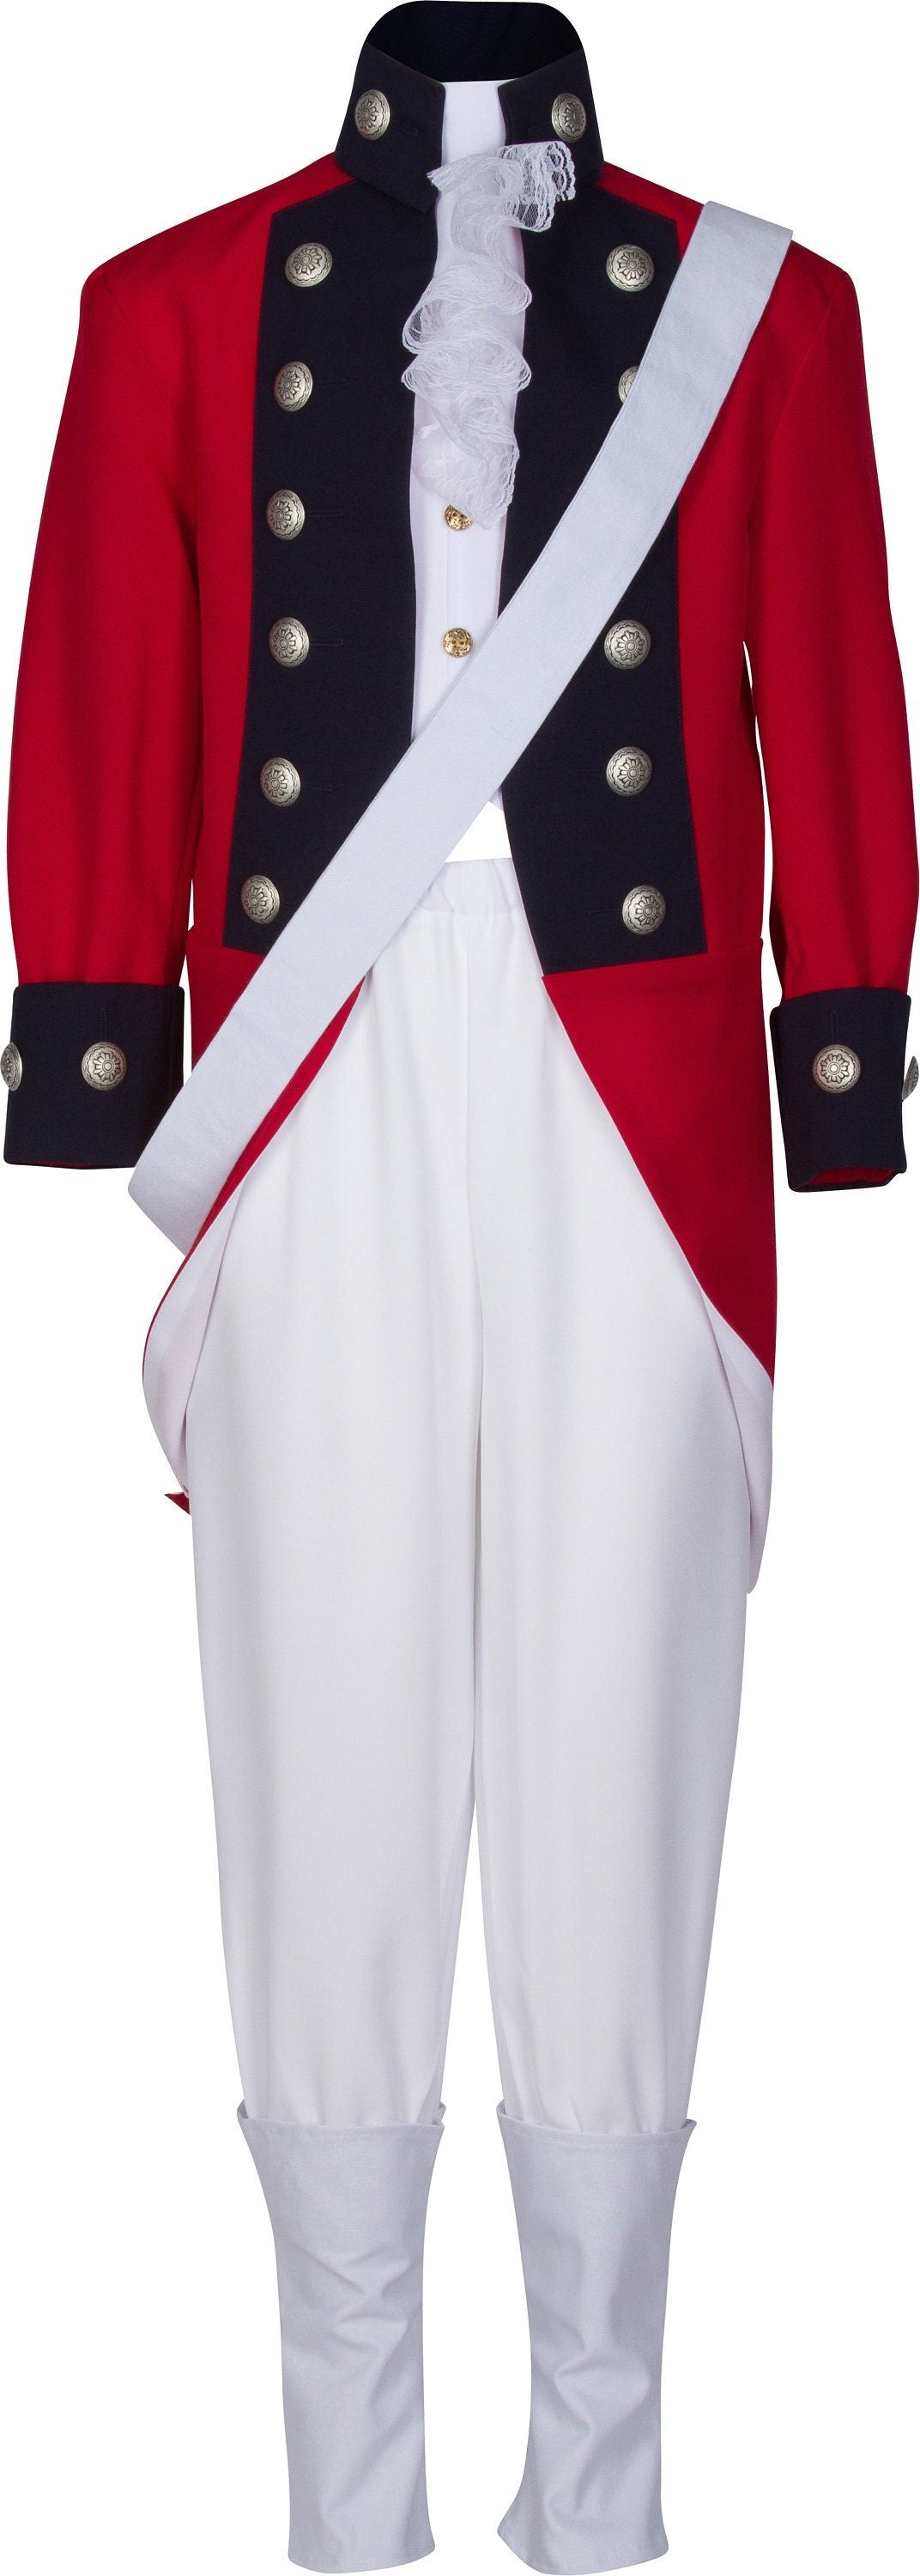 Children's Thomas Gage British Revolutionary War Uniform